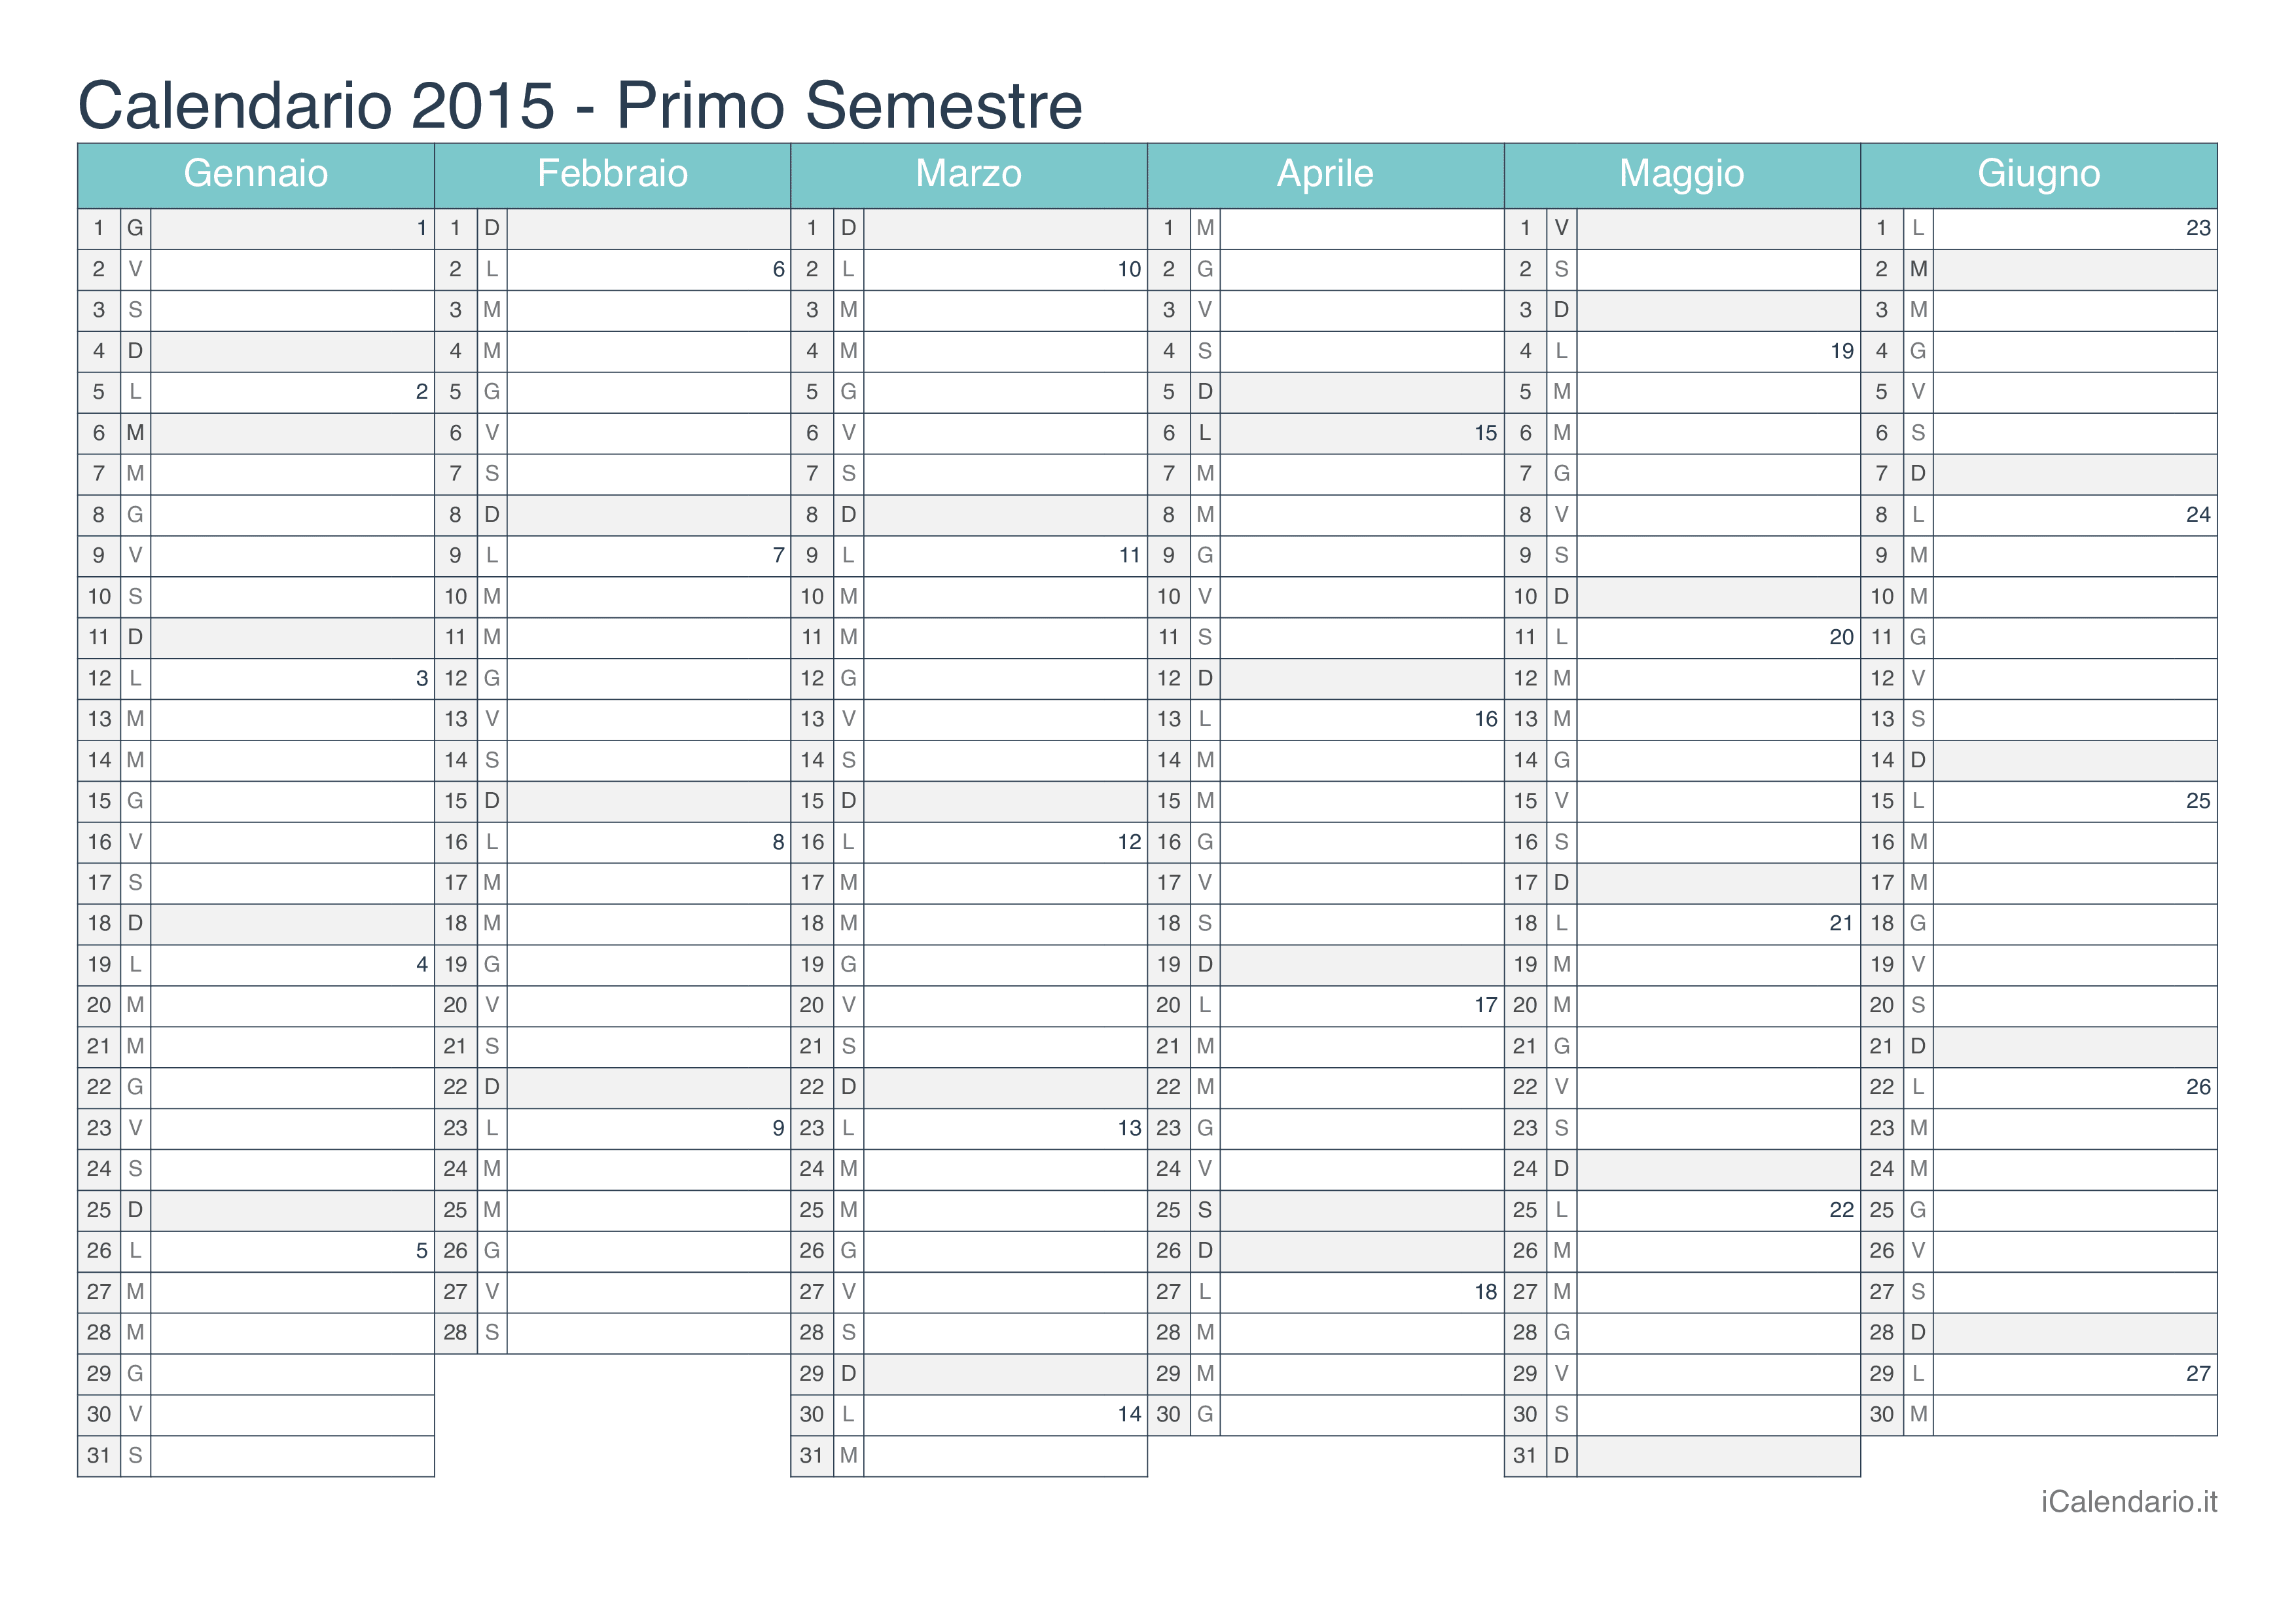 Calendario semestrale con numeri delle settimane 2015 - Turchese